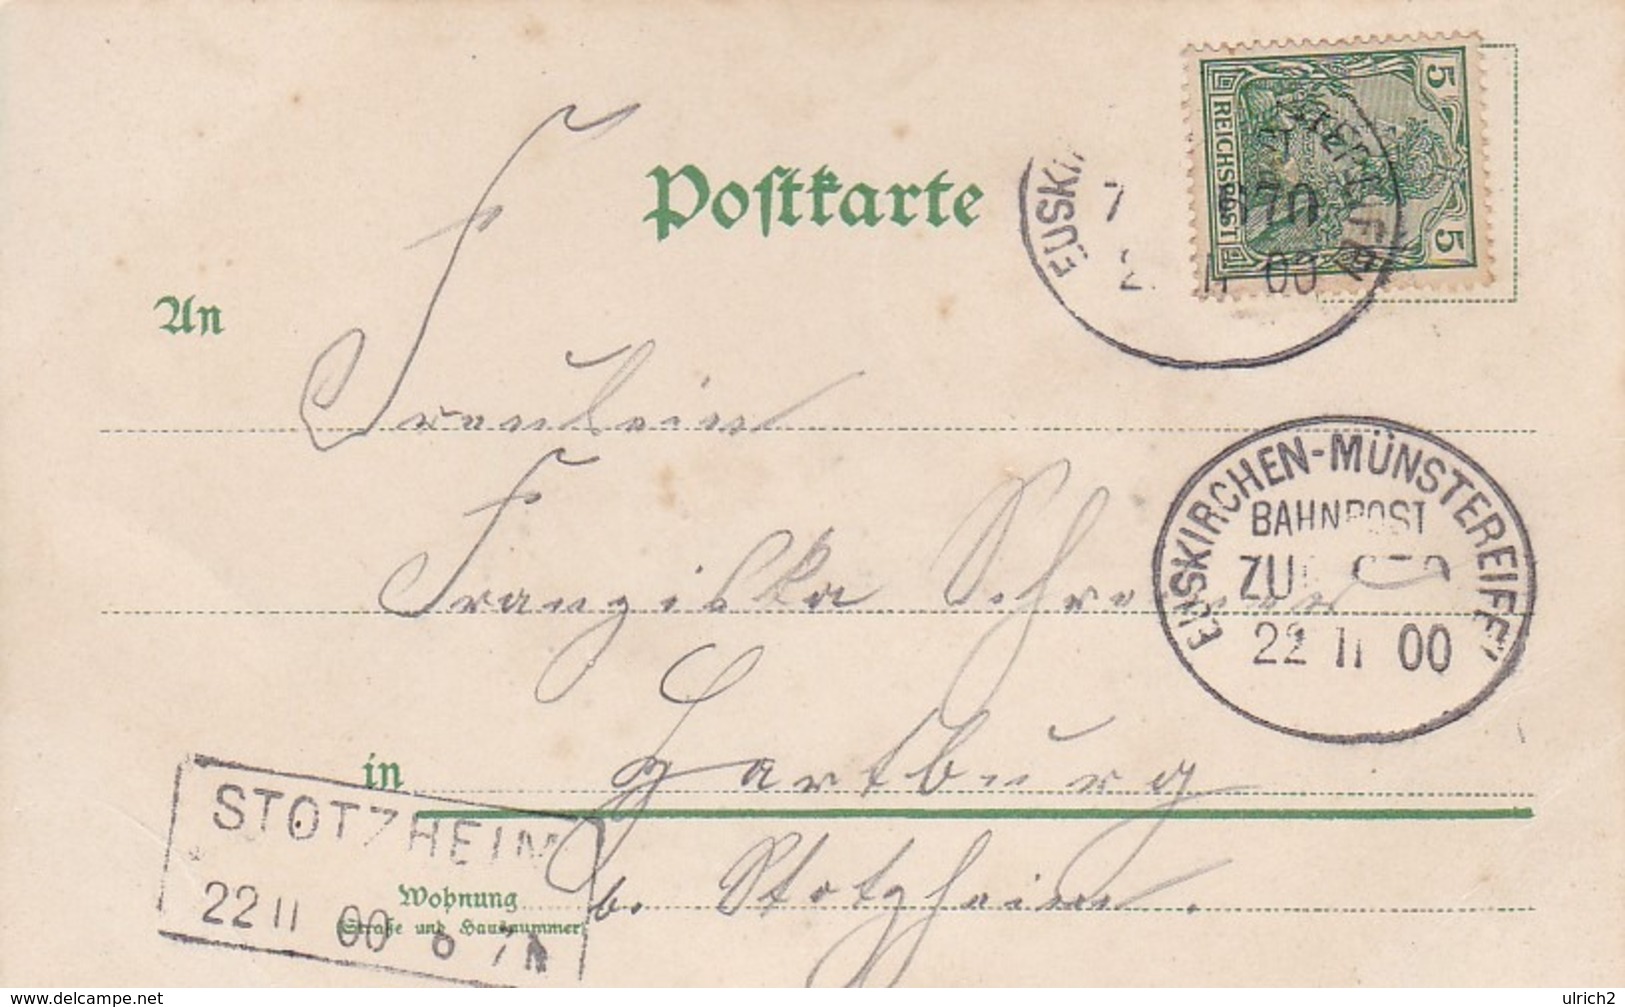 AK Frau In Hängematte - Karte Mit Glitter - Bahnpost Euskirchen-Münster - Posthilfsstelle Stotzheim - 1900 (43252) - Frauen